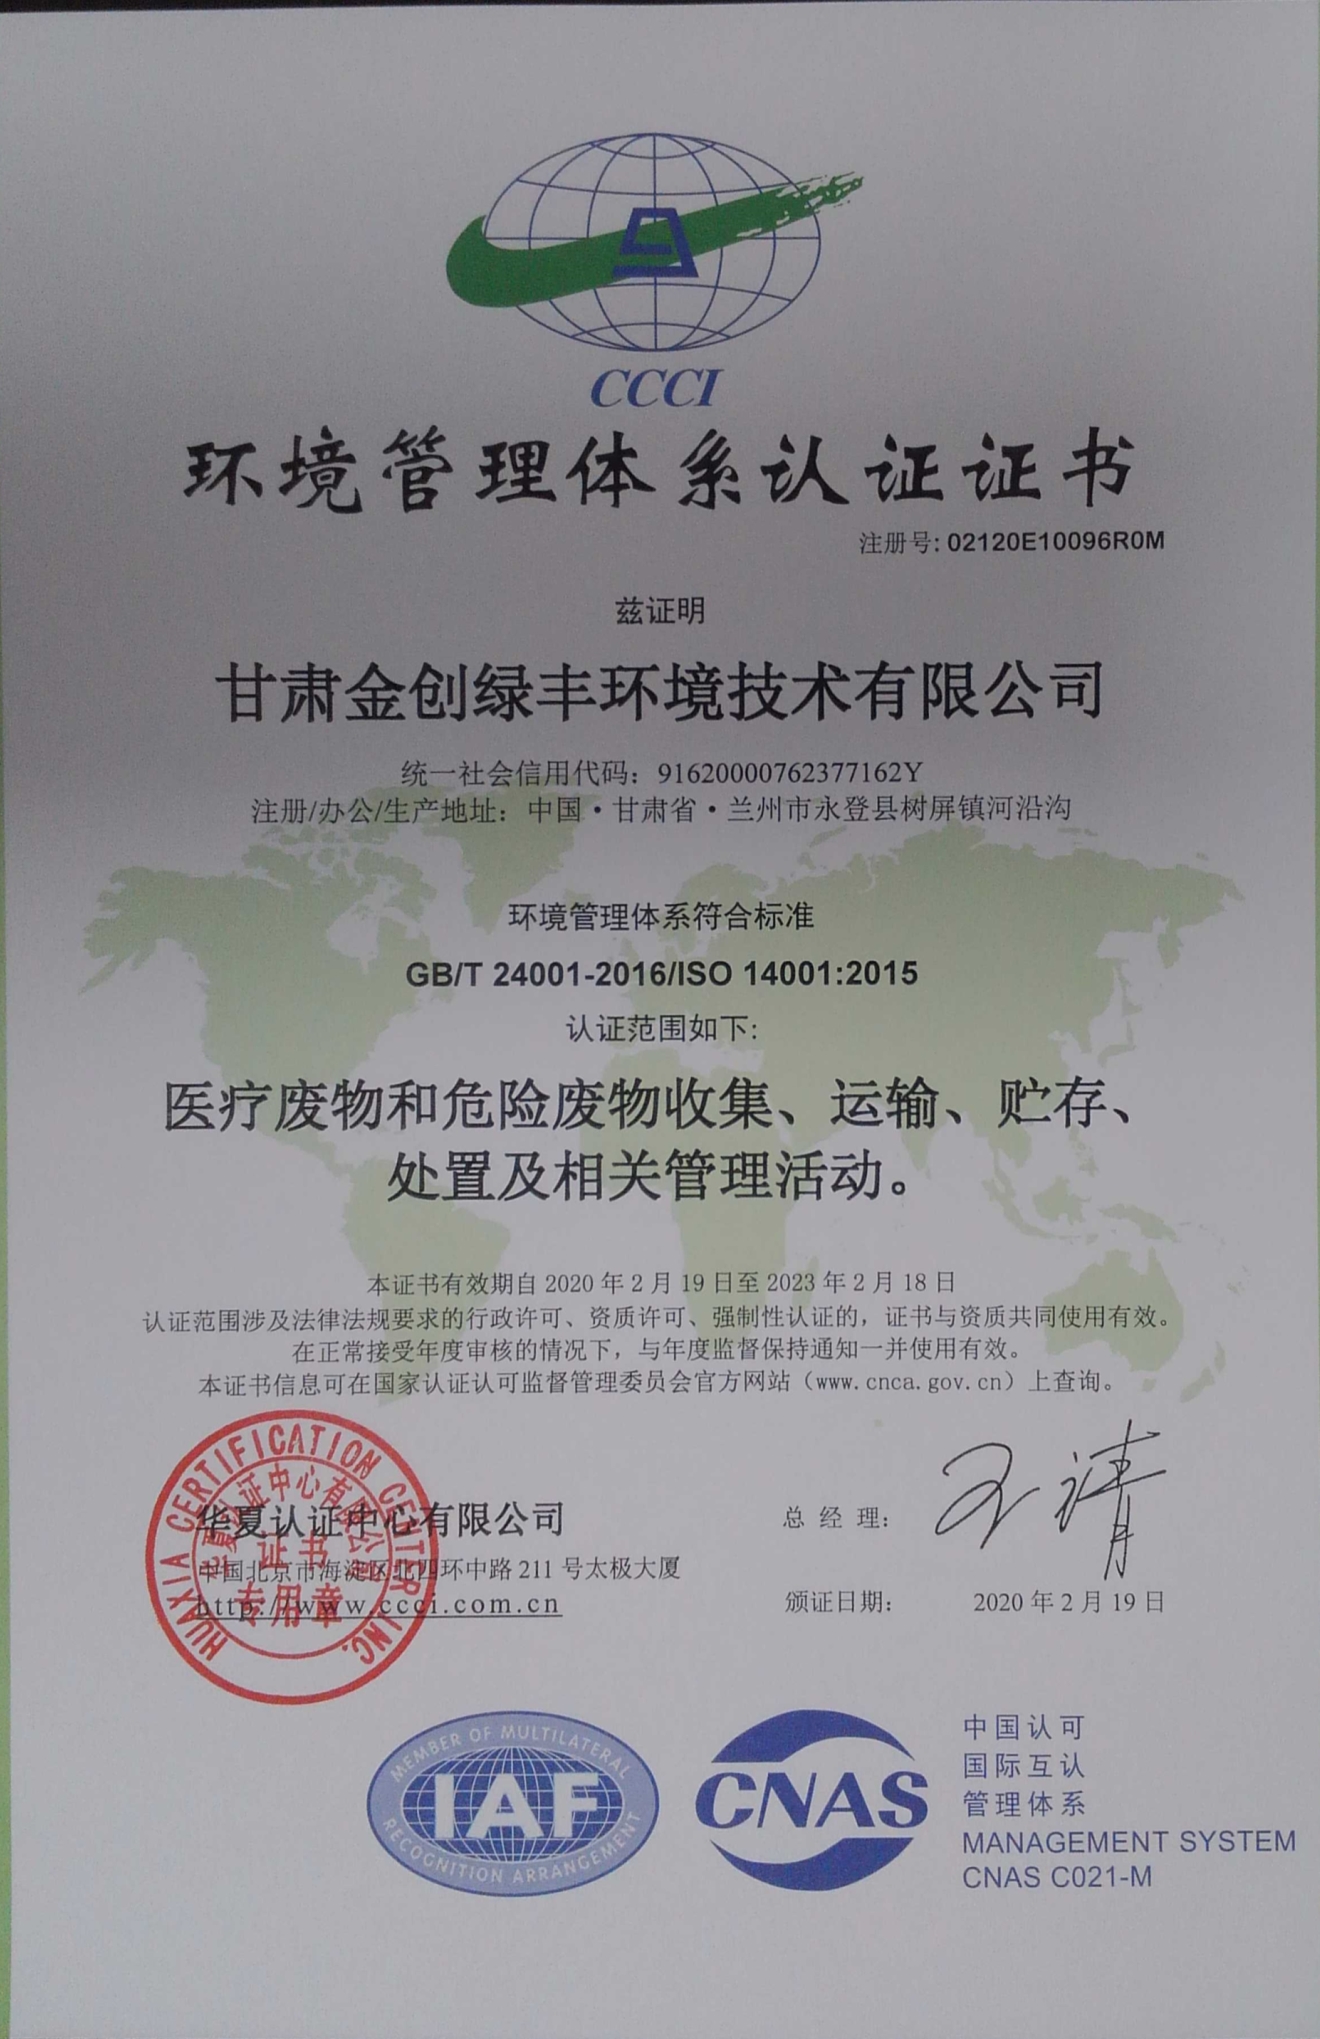 甘肃金创绿丰环境技术有限公司环境管理体系认证证书1_看图王.jpg